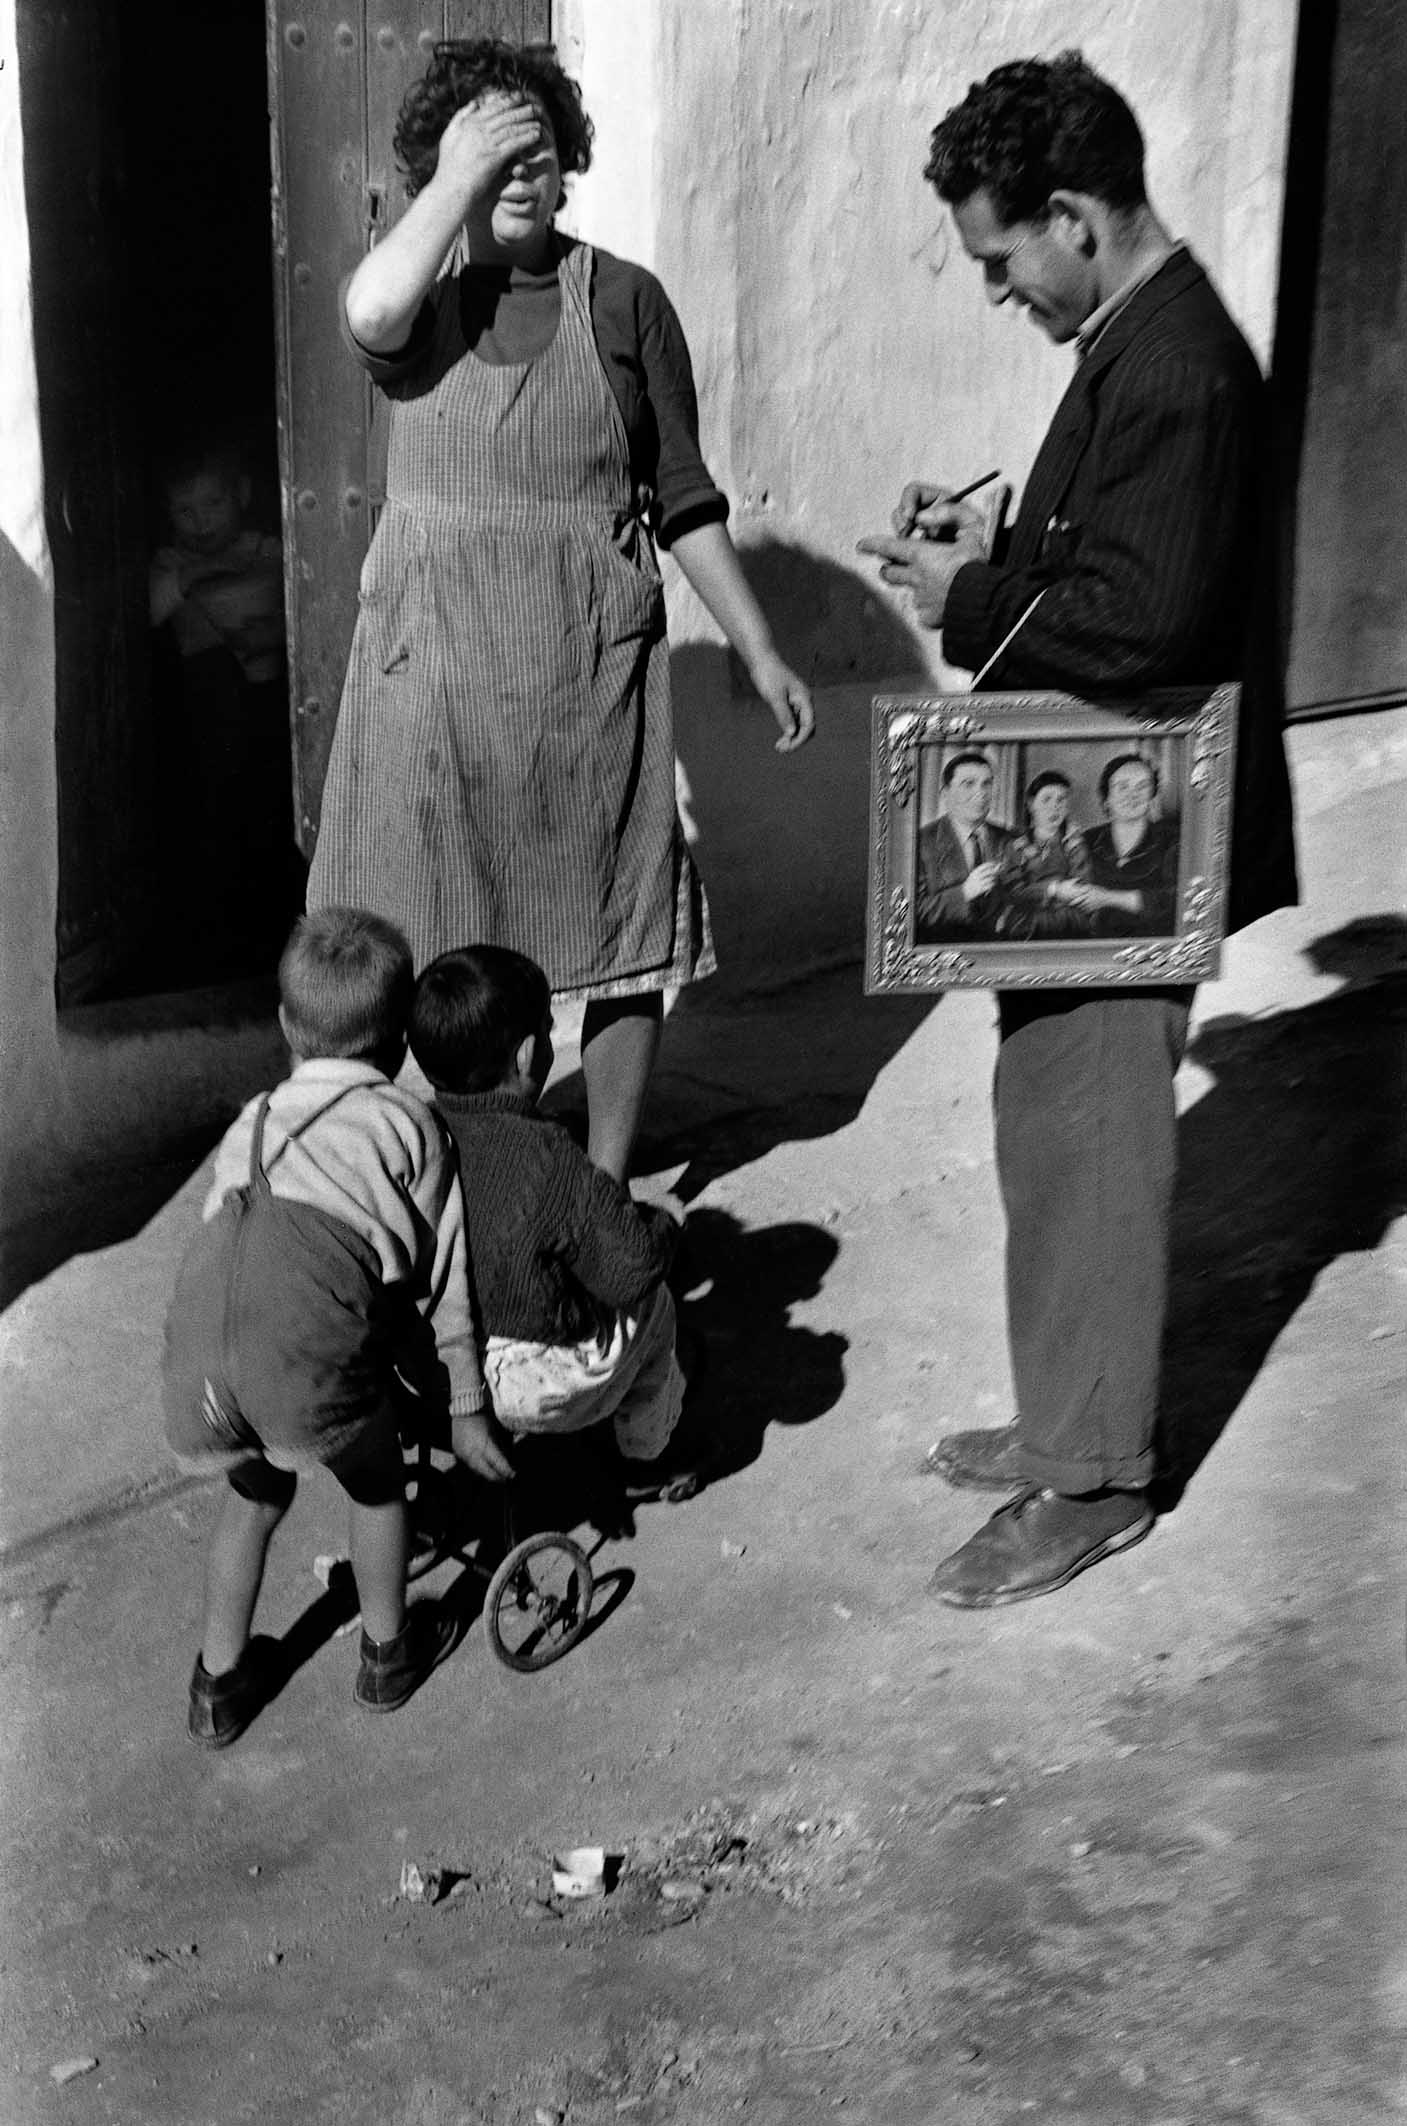 La Chanca, Almería, 1957<br/>Impresión de tintas de pigmento / Inkjet print 